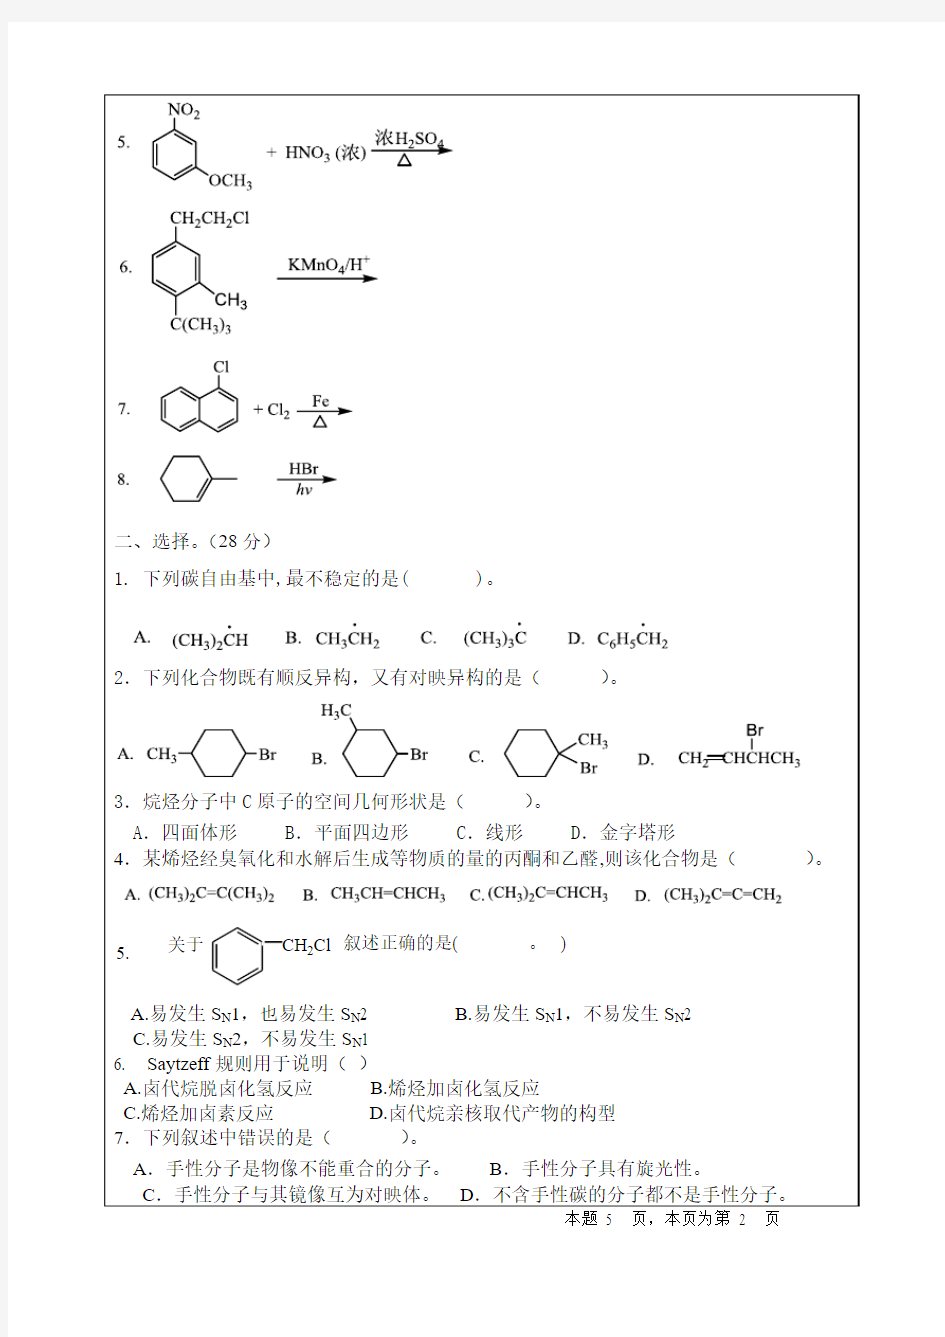 四川大学有机化学2013春季期中考试